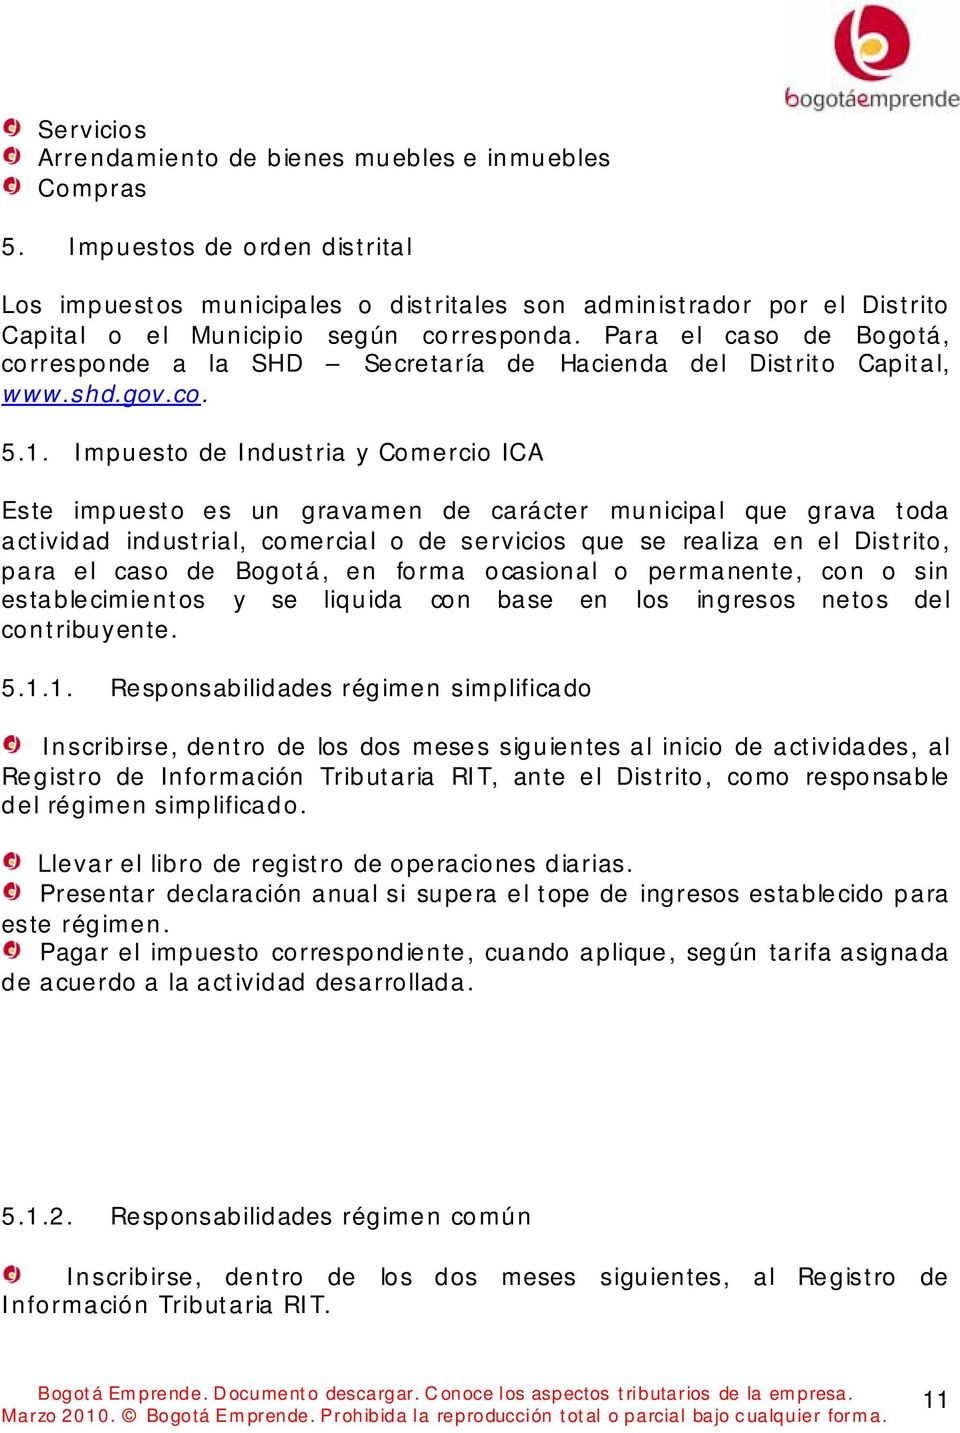 Para el caso de Bogotá, corresponde a la SHD Secretaría de Hacienda del Distrito Capital, www.shd.gov.co. 5.1.